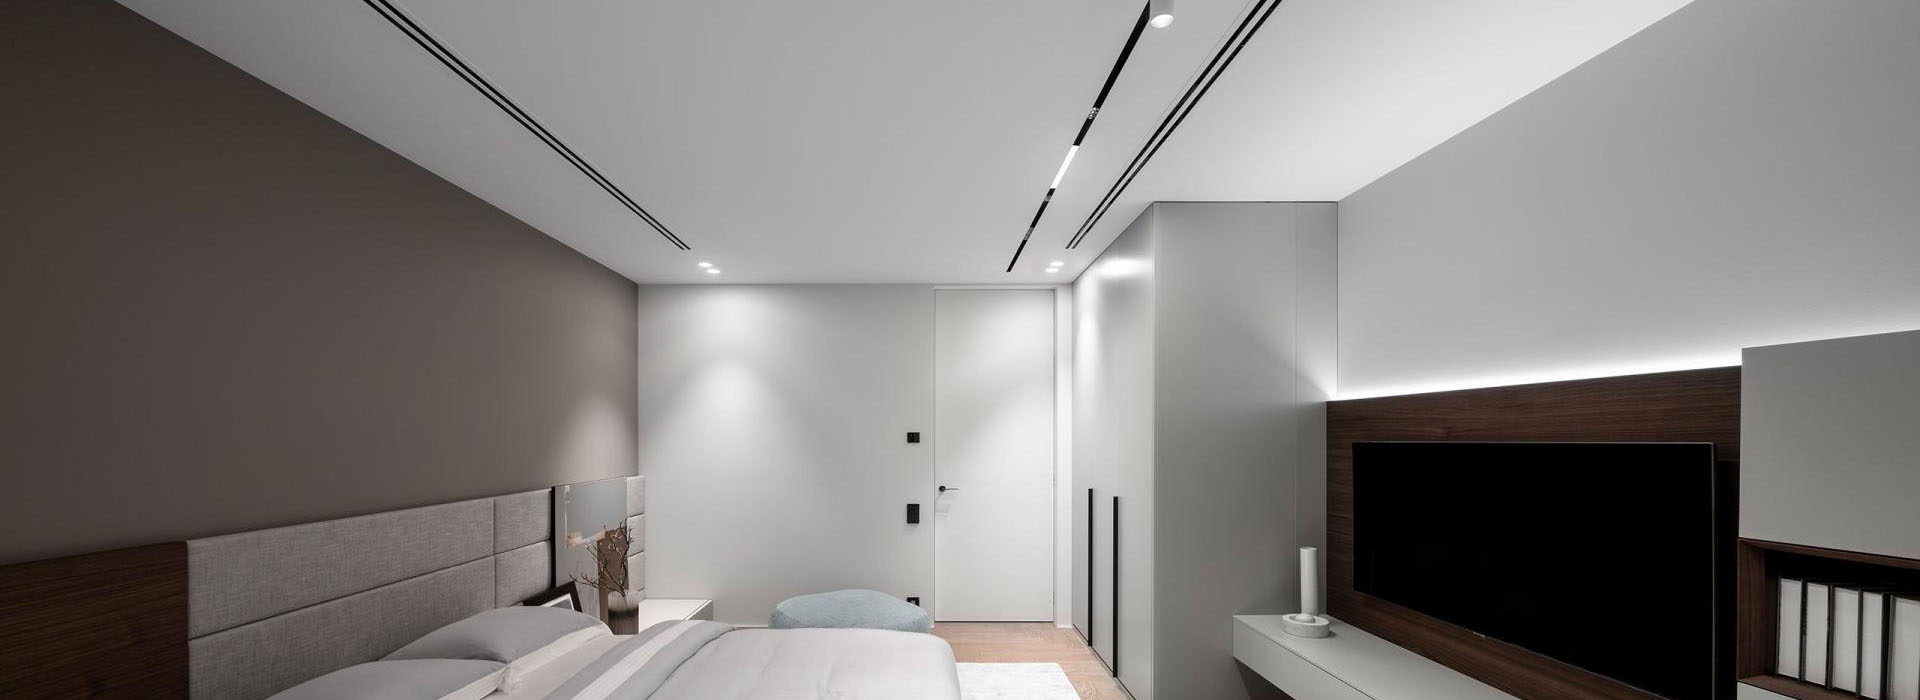 Натяжные потолки для спальни: Как выбрать и осветить